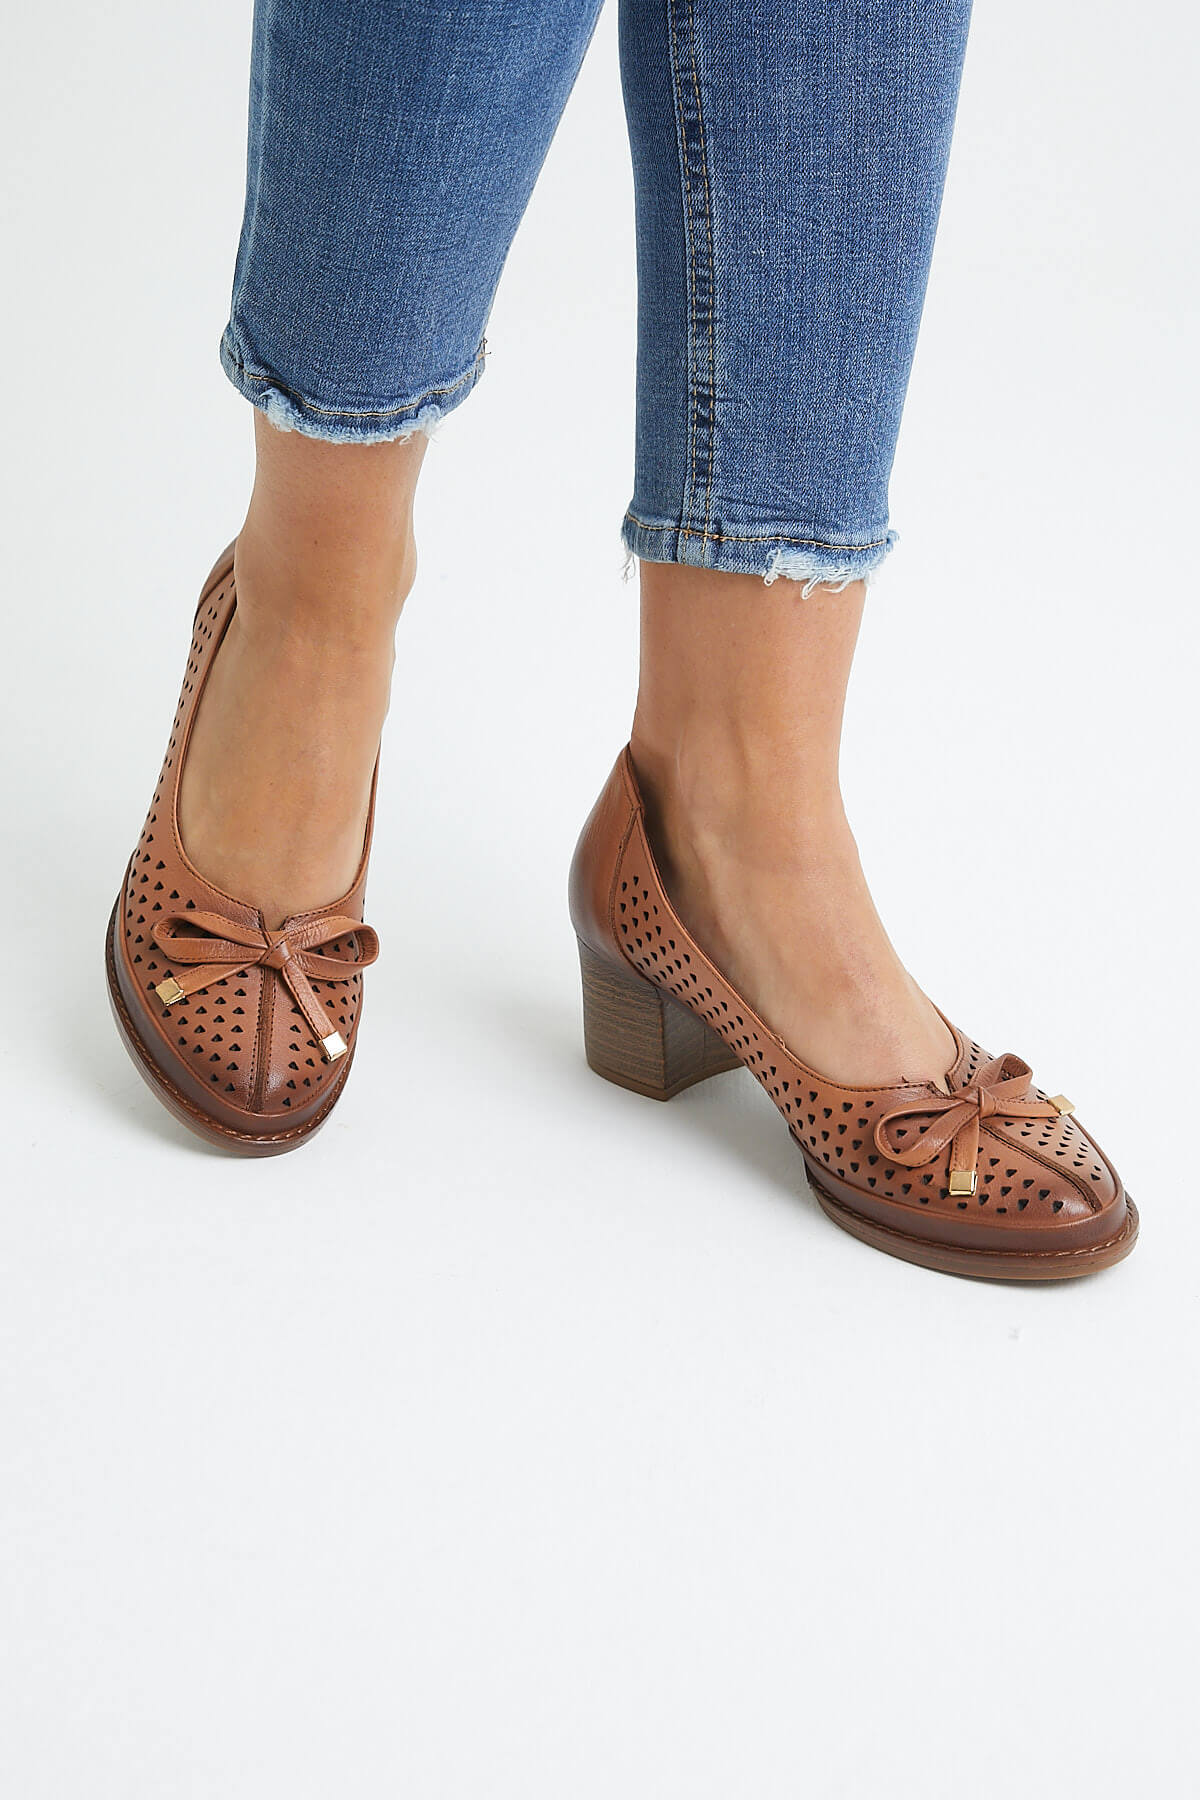 Kadın Topuklu Deri Ayakkabı Taba 2113301Y - Thumbnail